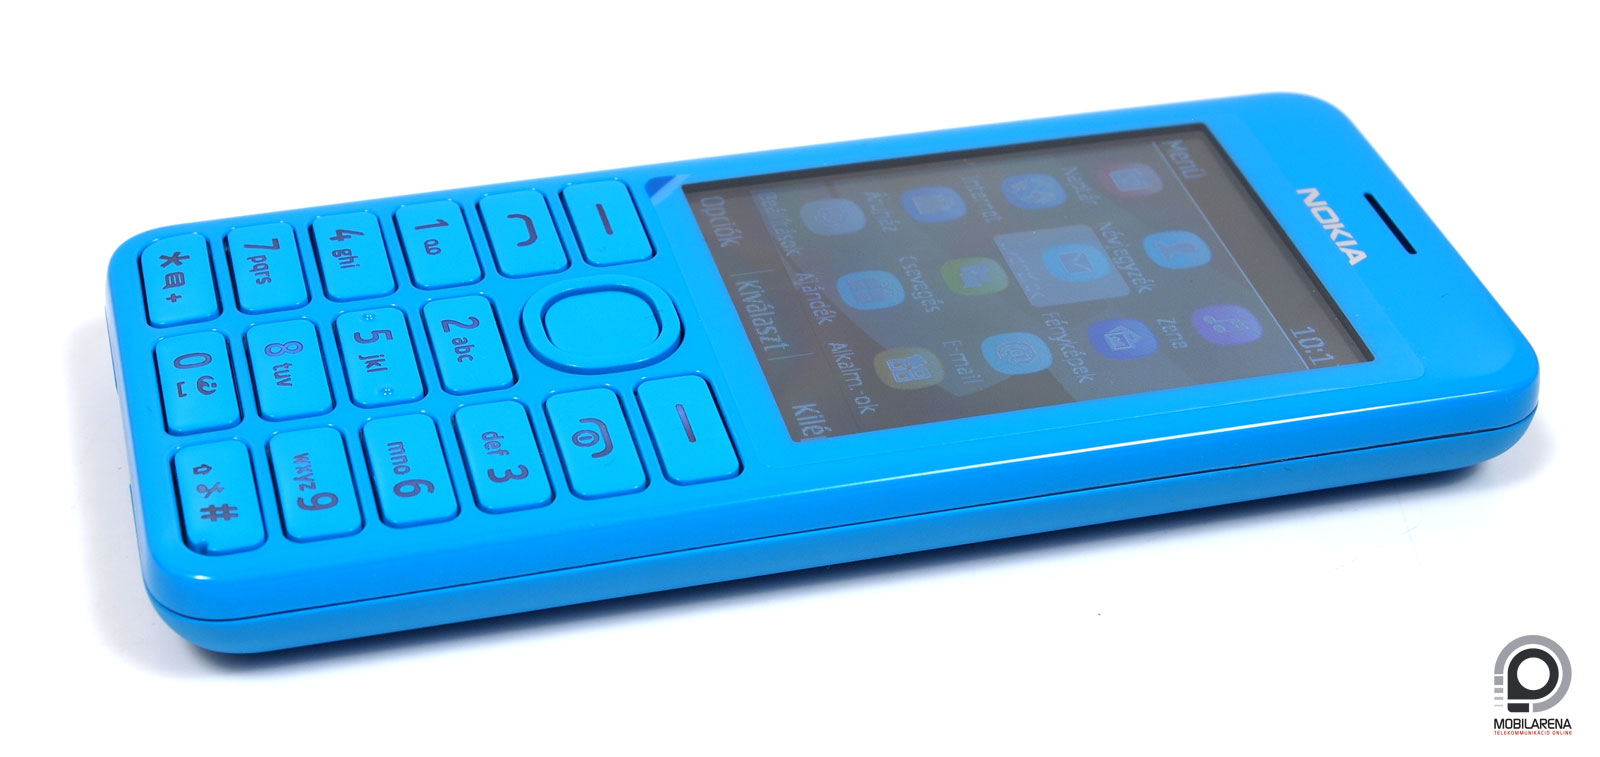 Nokia 206 - buta gyermek Lumia szülőktől - Mobilarena Mobiltelefon teszt -  Nyomtatóbarát verzió